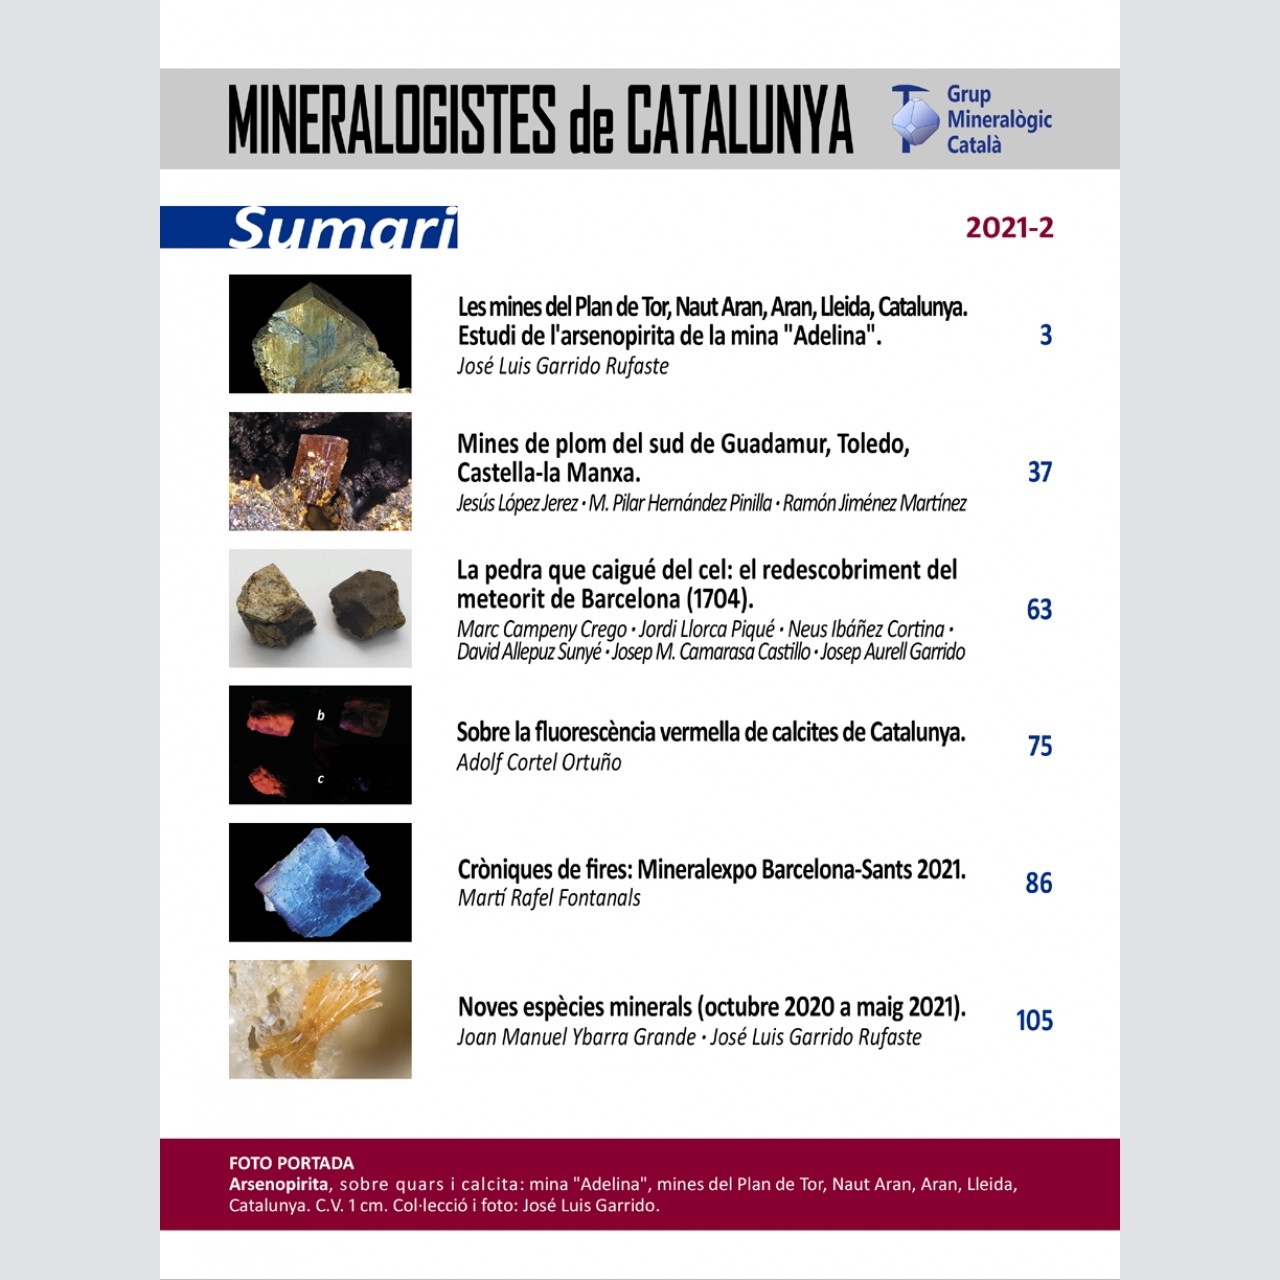 Mineralogistes de Catalunya (2021-2)